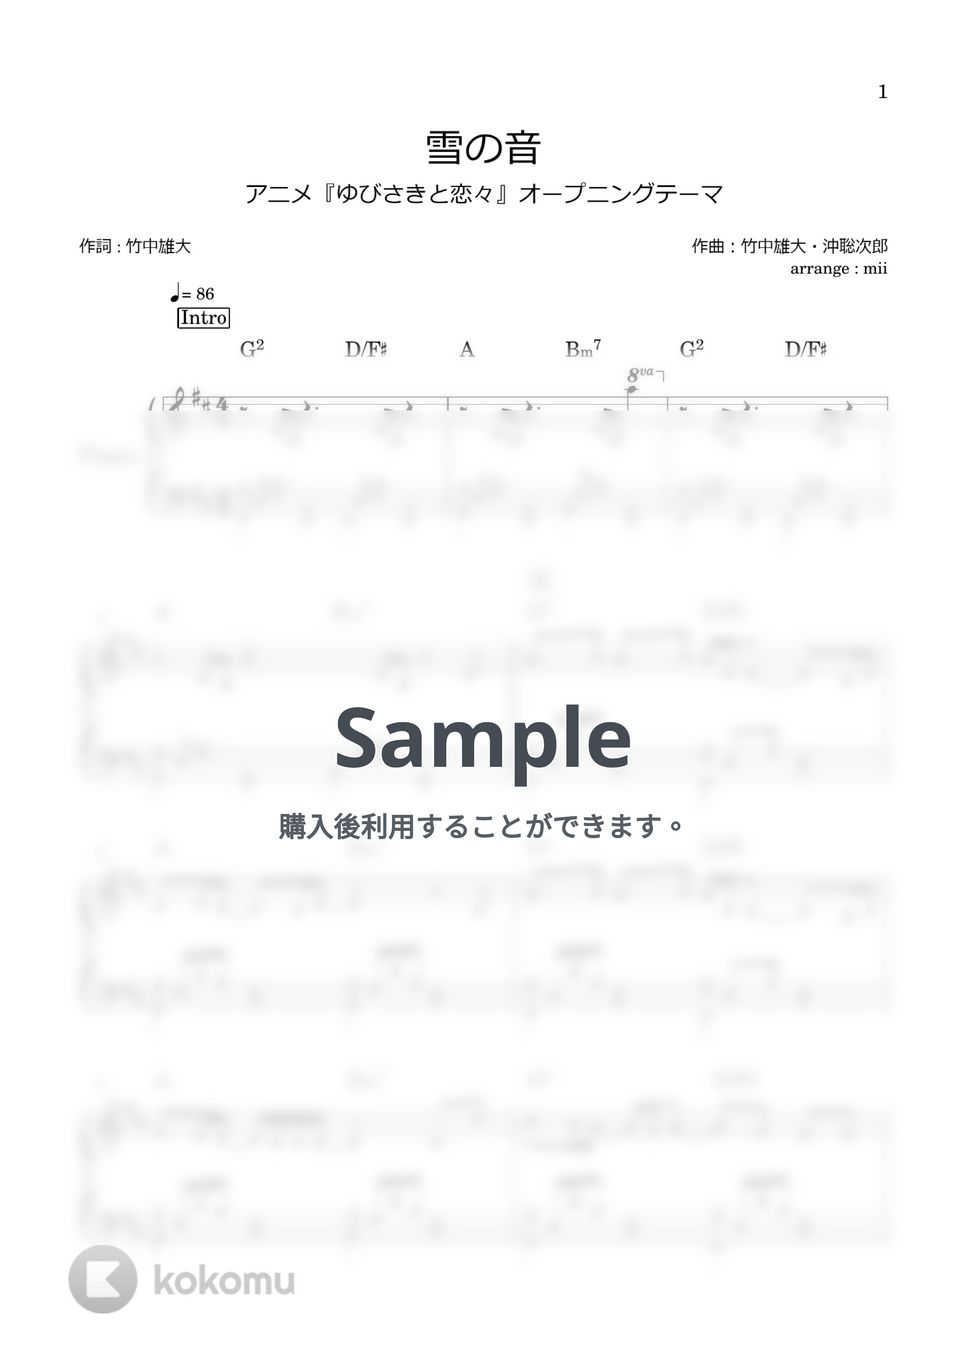 Novelbright - 雪の音 (ゆびさきと恋々 OP) by miiの楽譜棚